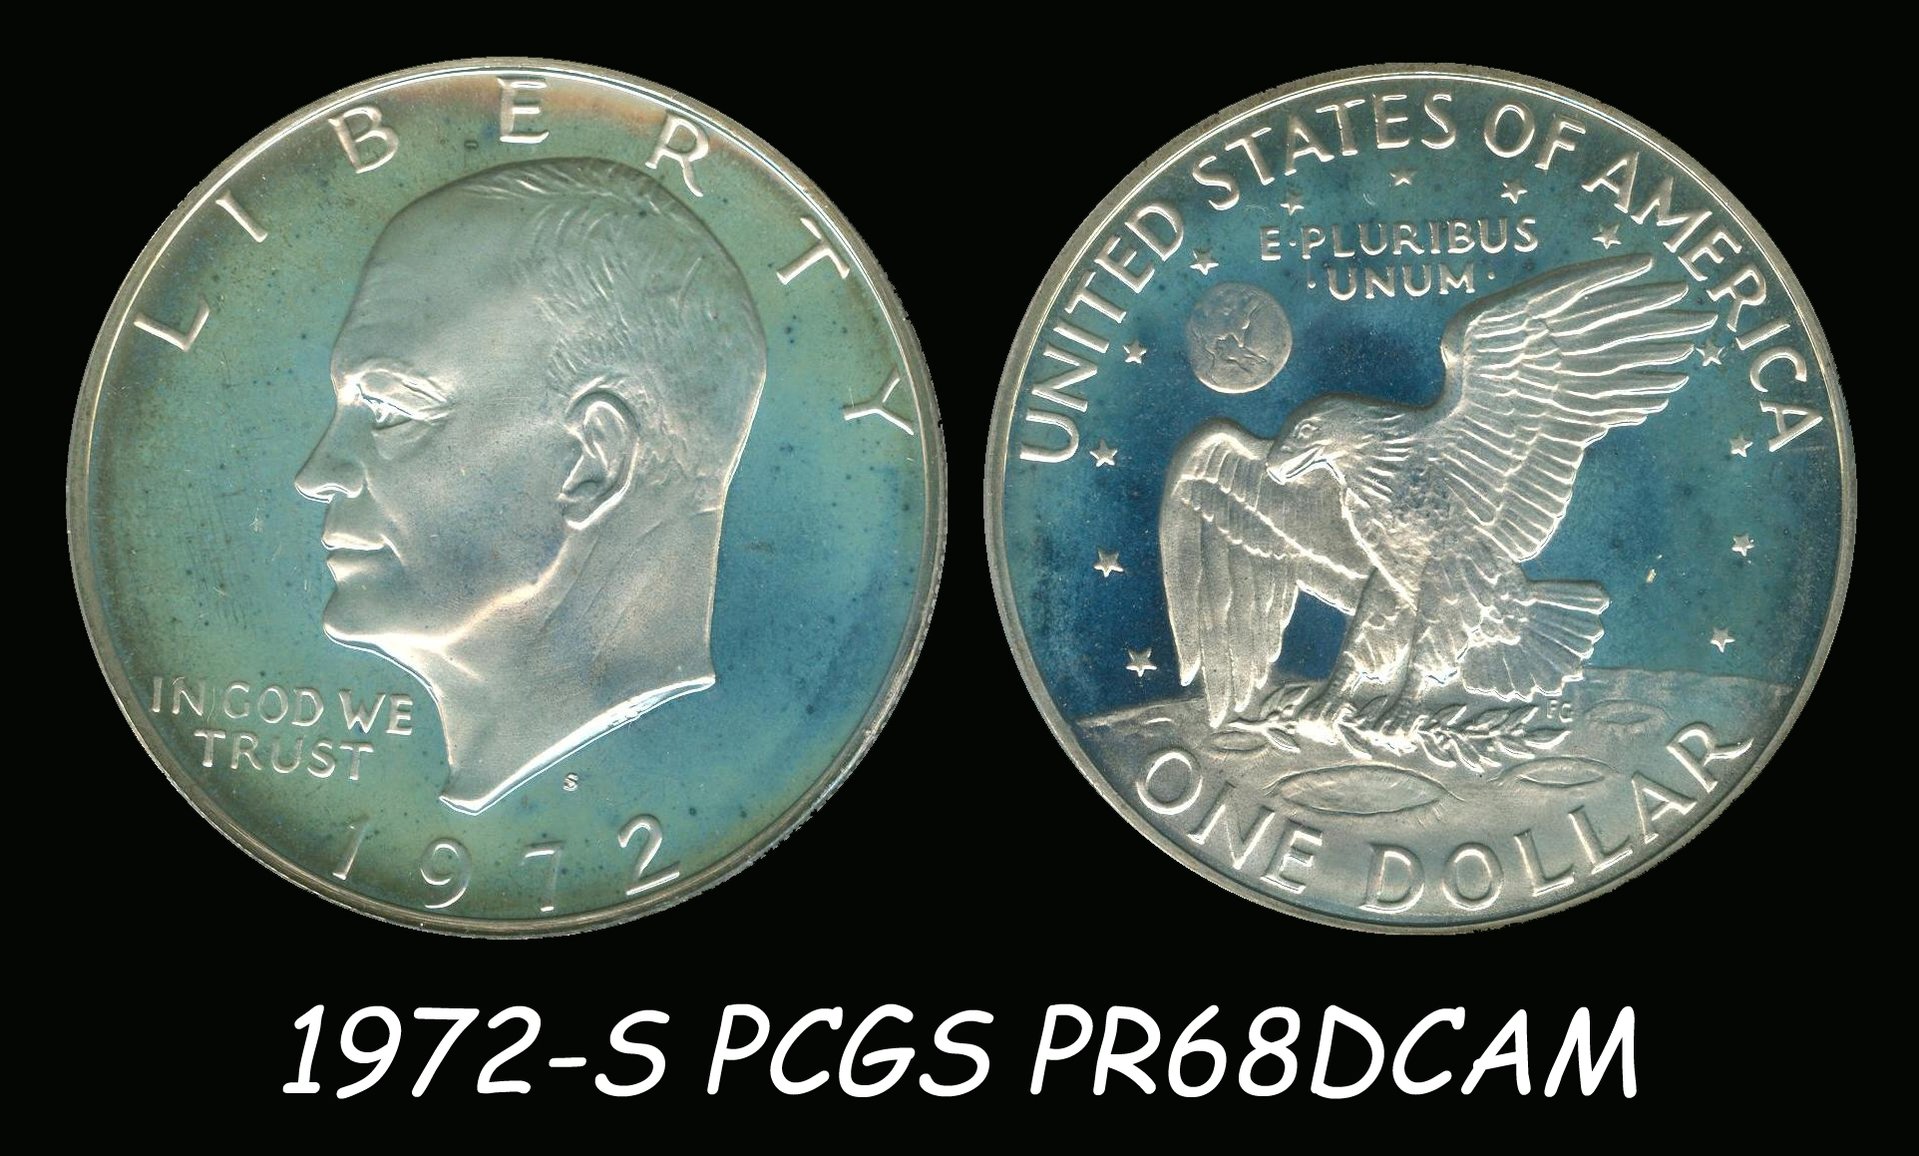 IKE 1972-S DDO Toned 15235002 PCGS PR68DCAM Coin.jpg